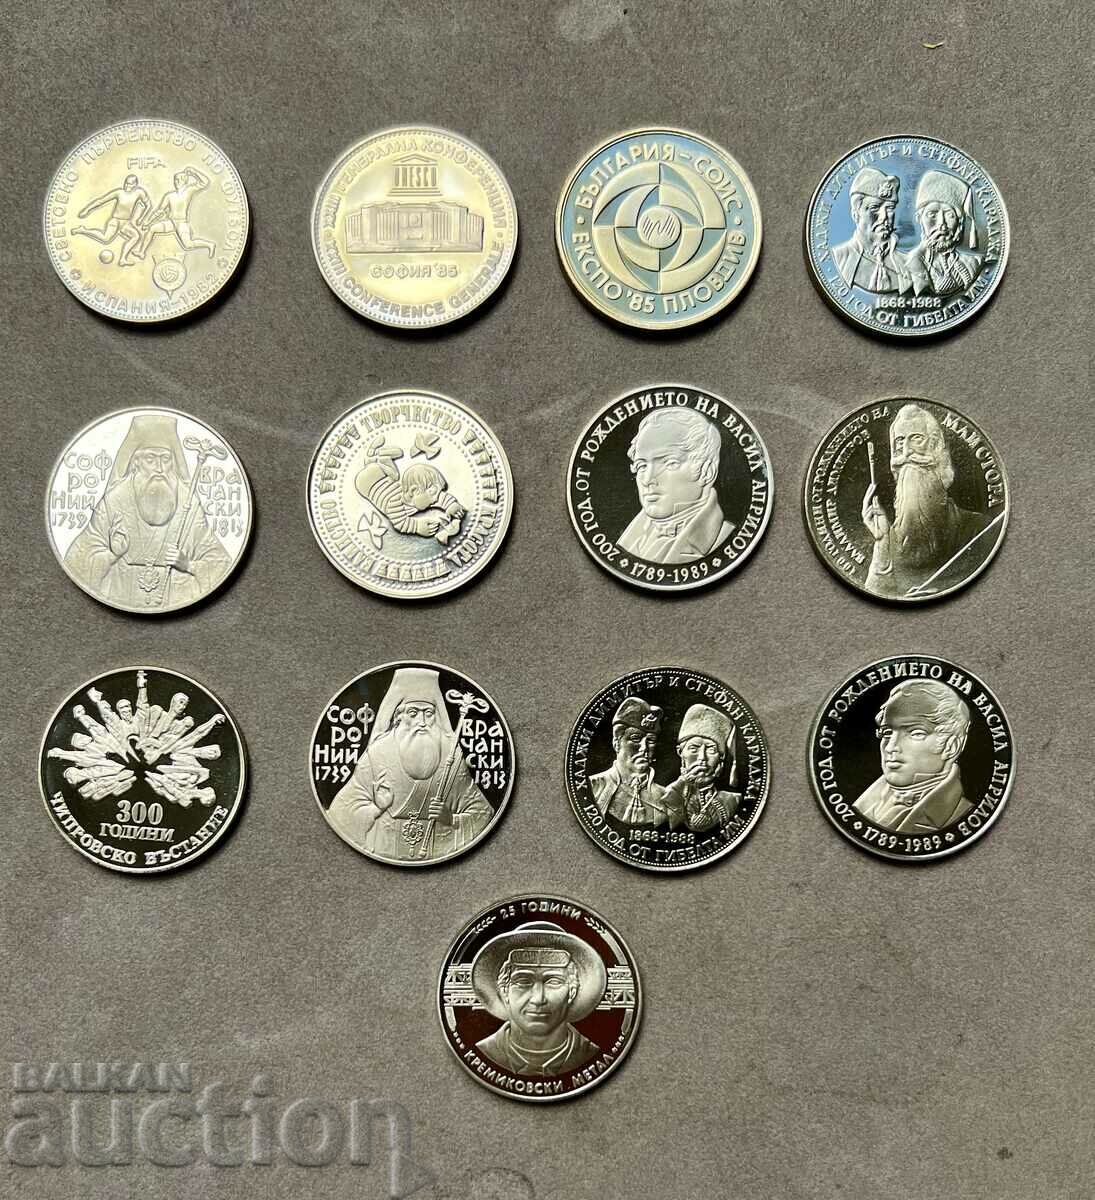 Lot EXCELENT 13 monede jubiliare de nichel din anii 1980 de la 5 BGN